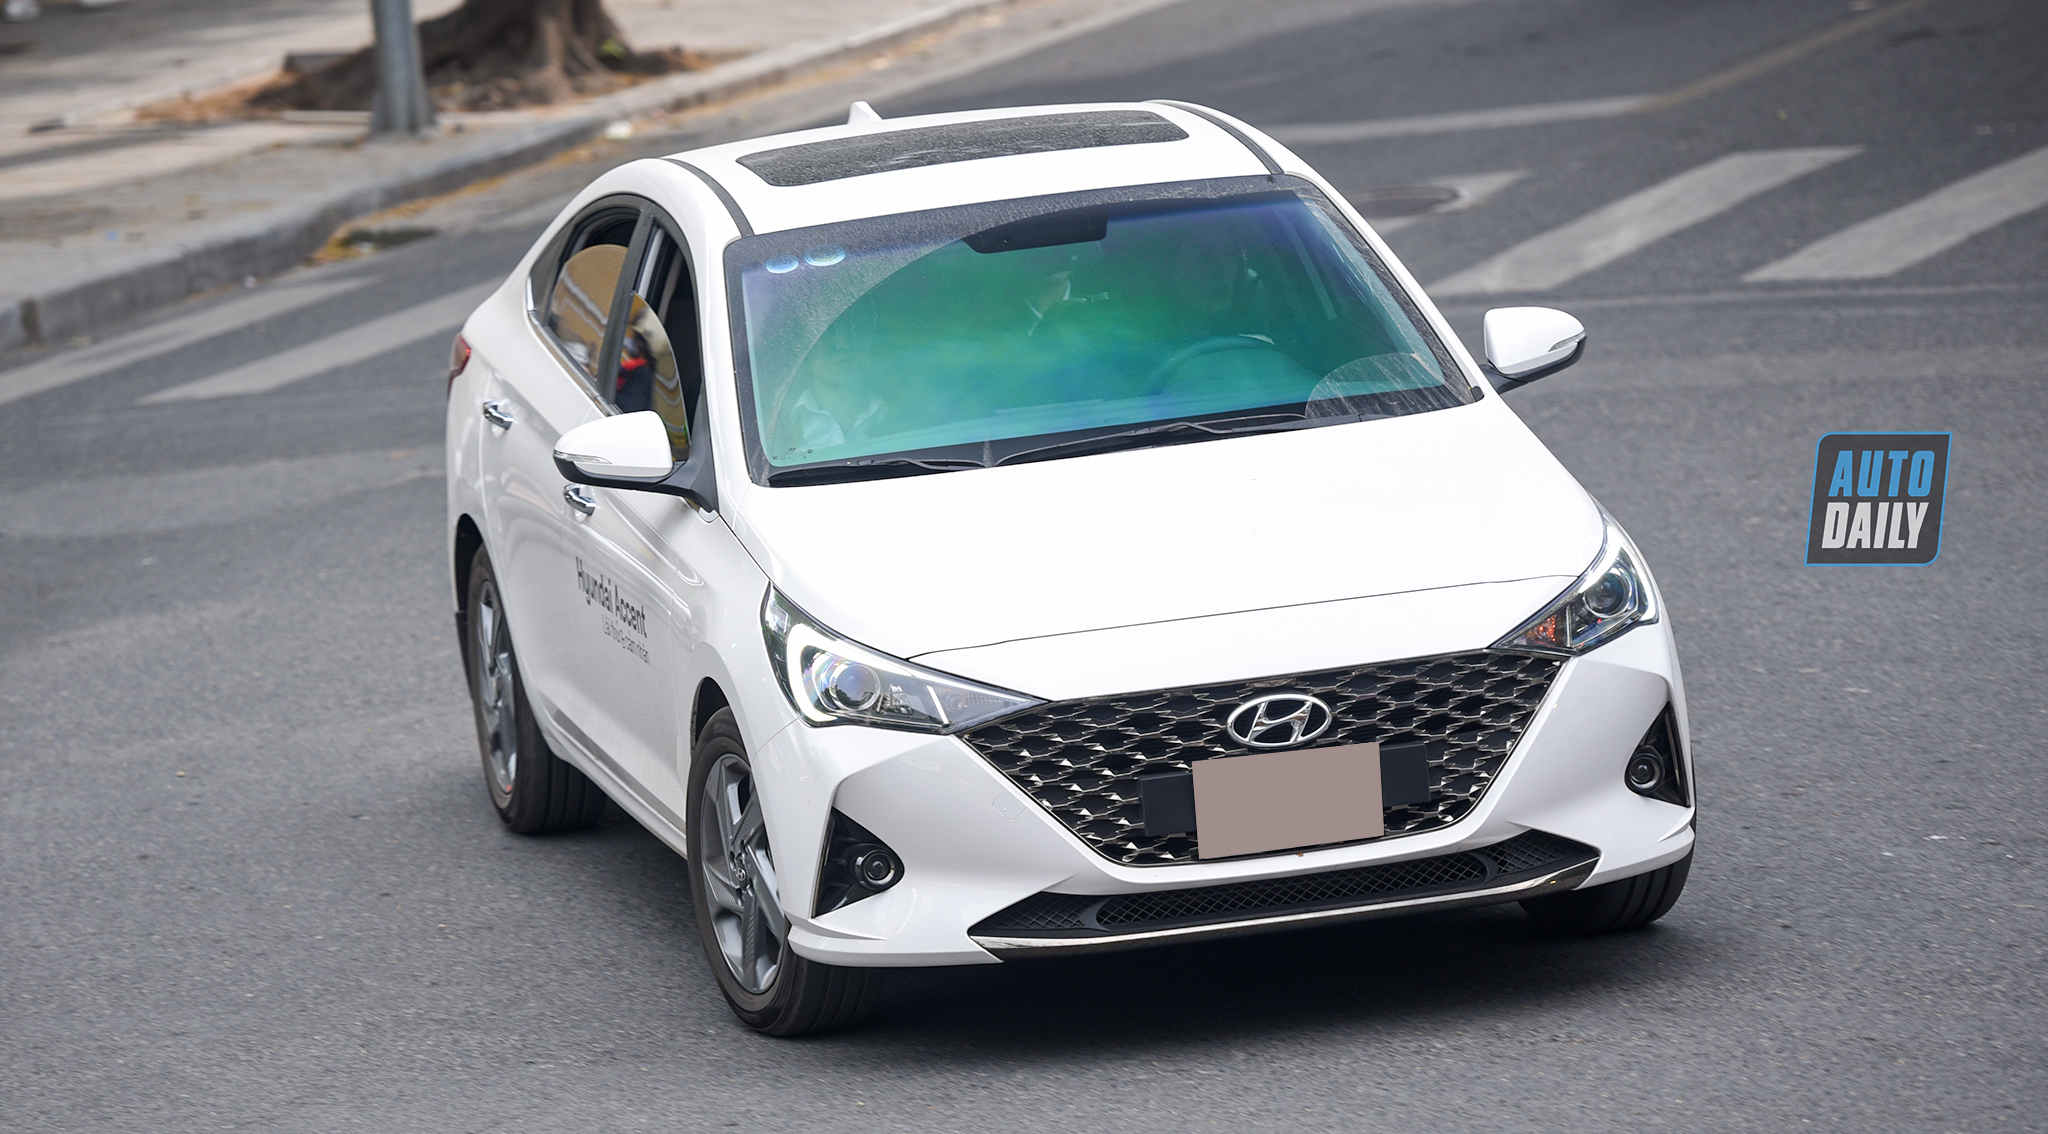 Hyundai Accent, Honda City bán chạy hơn Toyota Vios tháng 1/2021 dsc-3641-copy.jpg